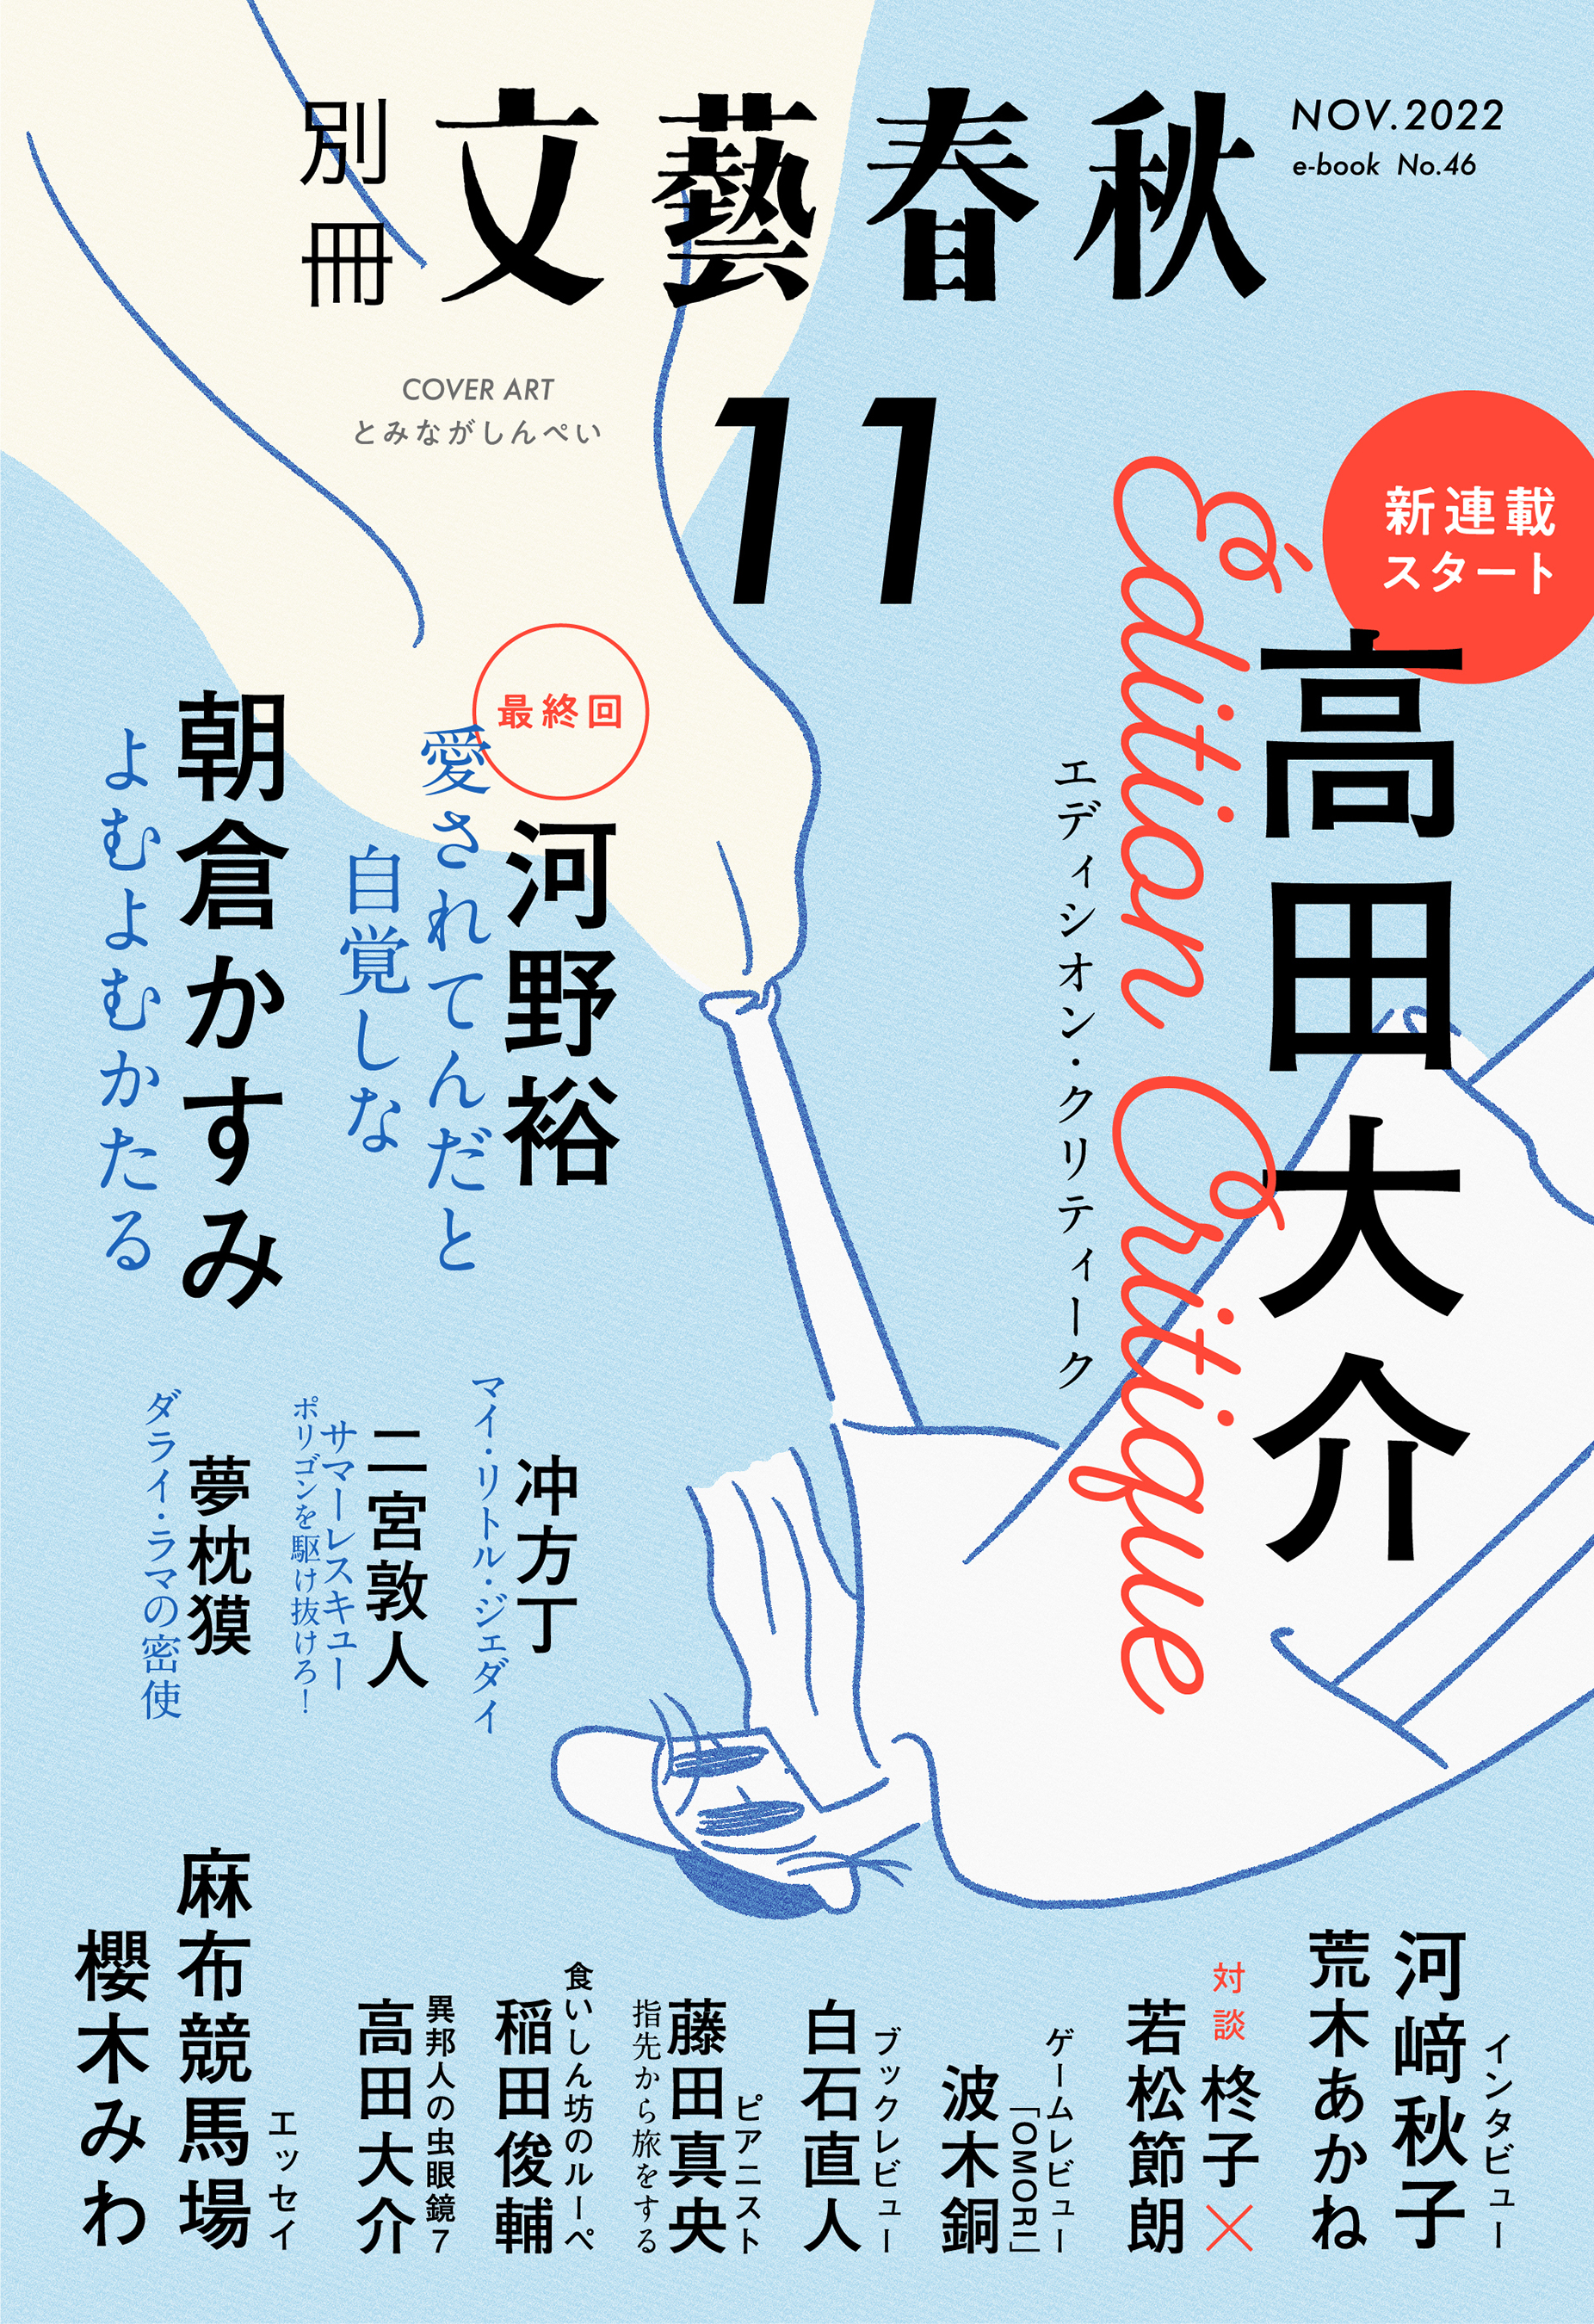 別冊文藝春秋 電子版46号 (2022年11月号) - 文藝春秋 - 漫画・ラノベ